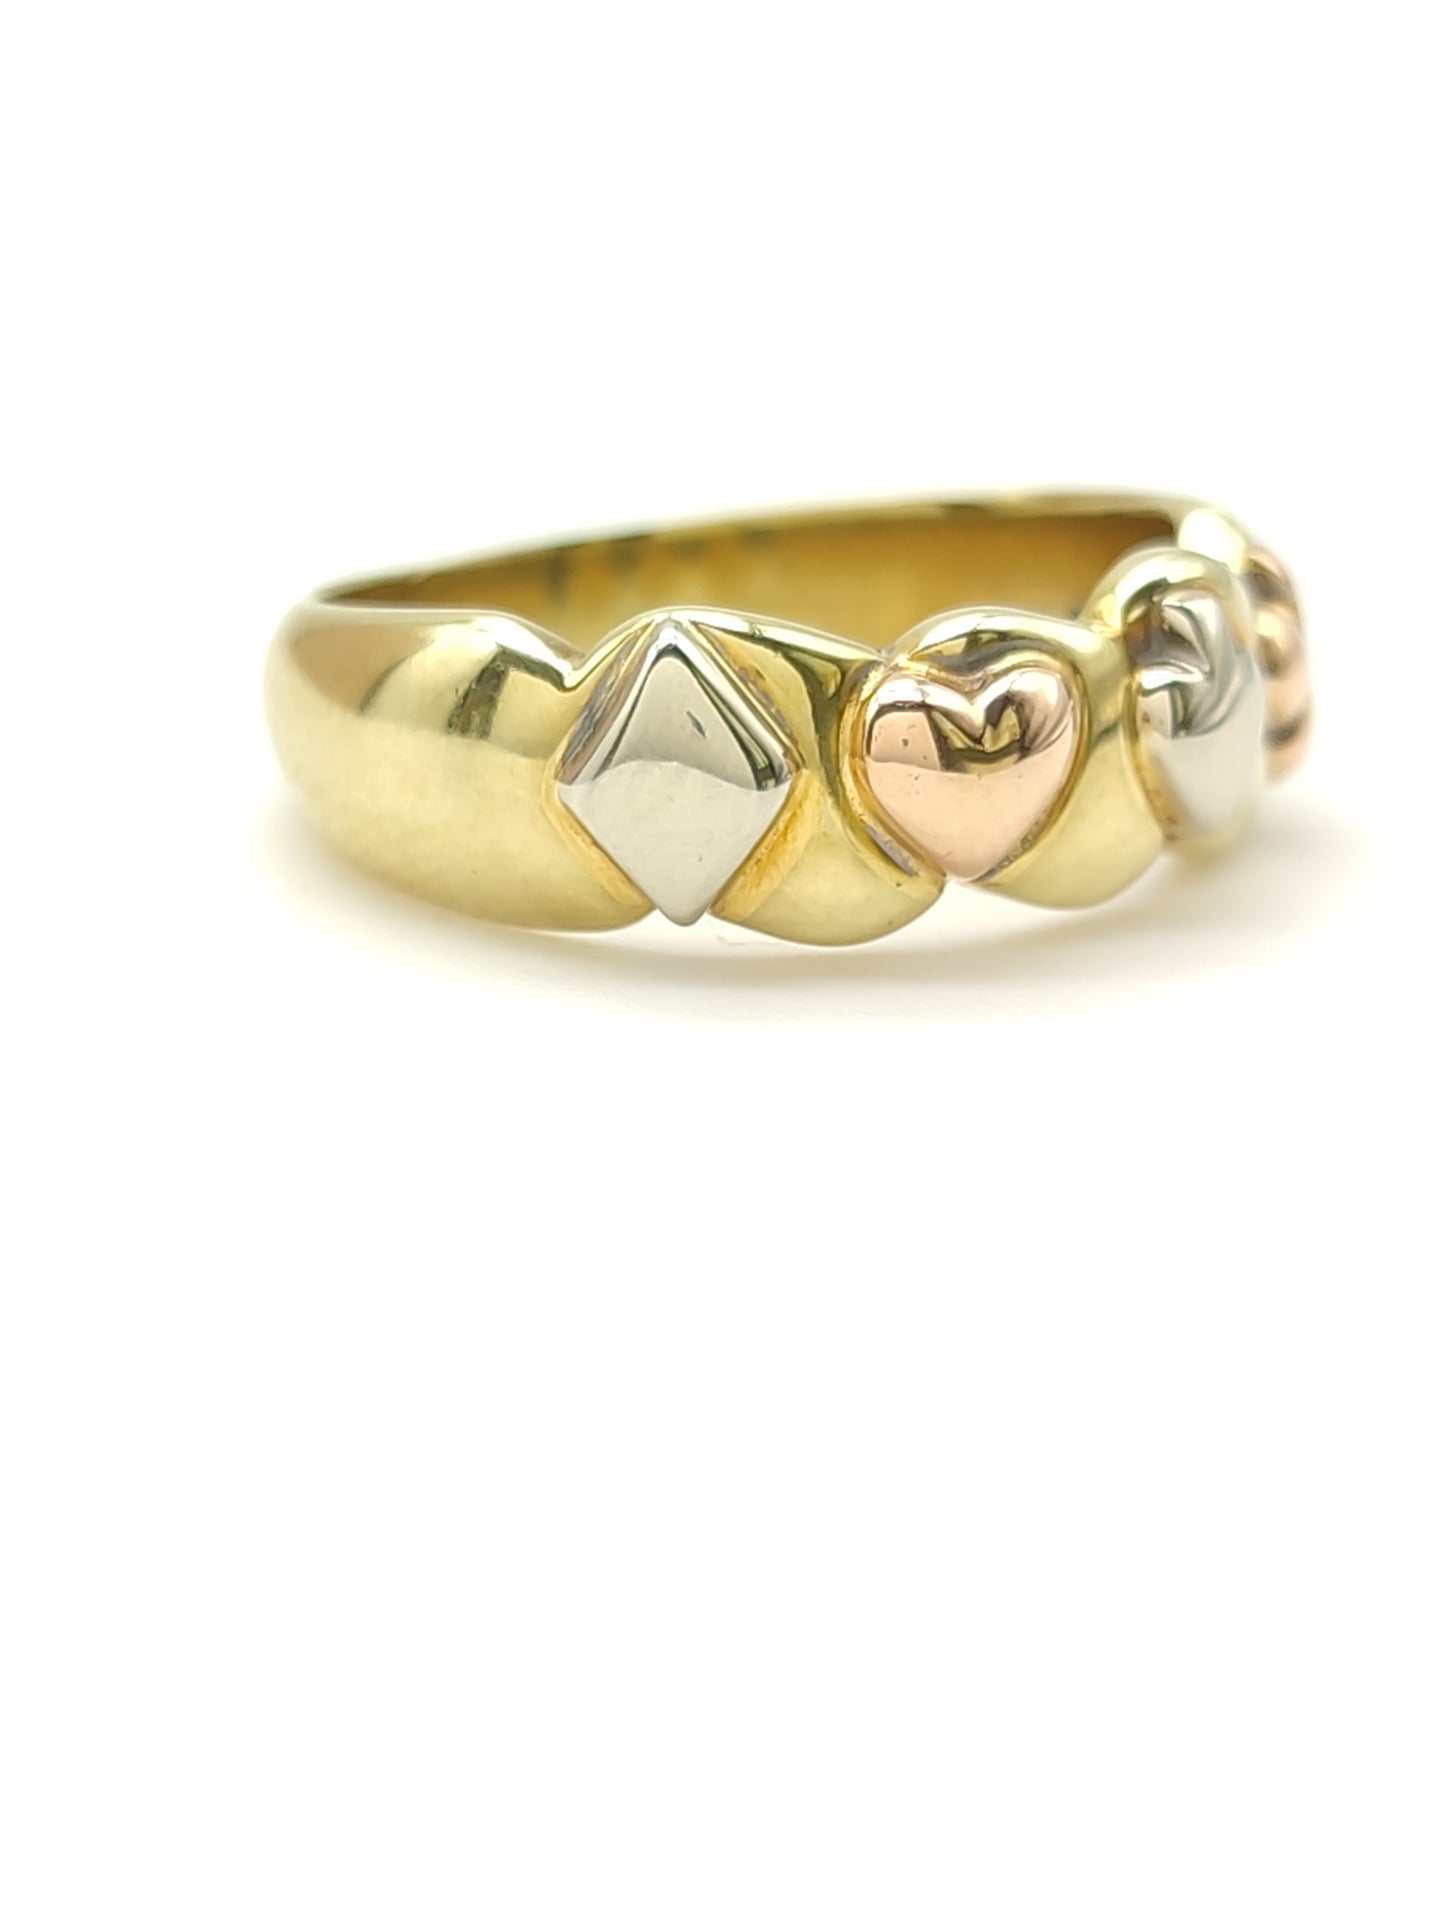 Pavan - Gold band ring